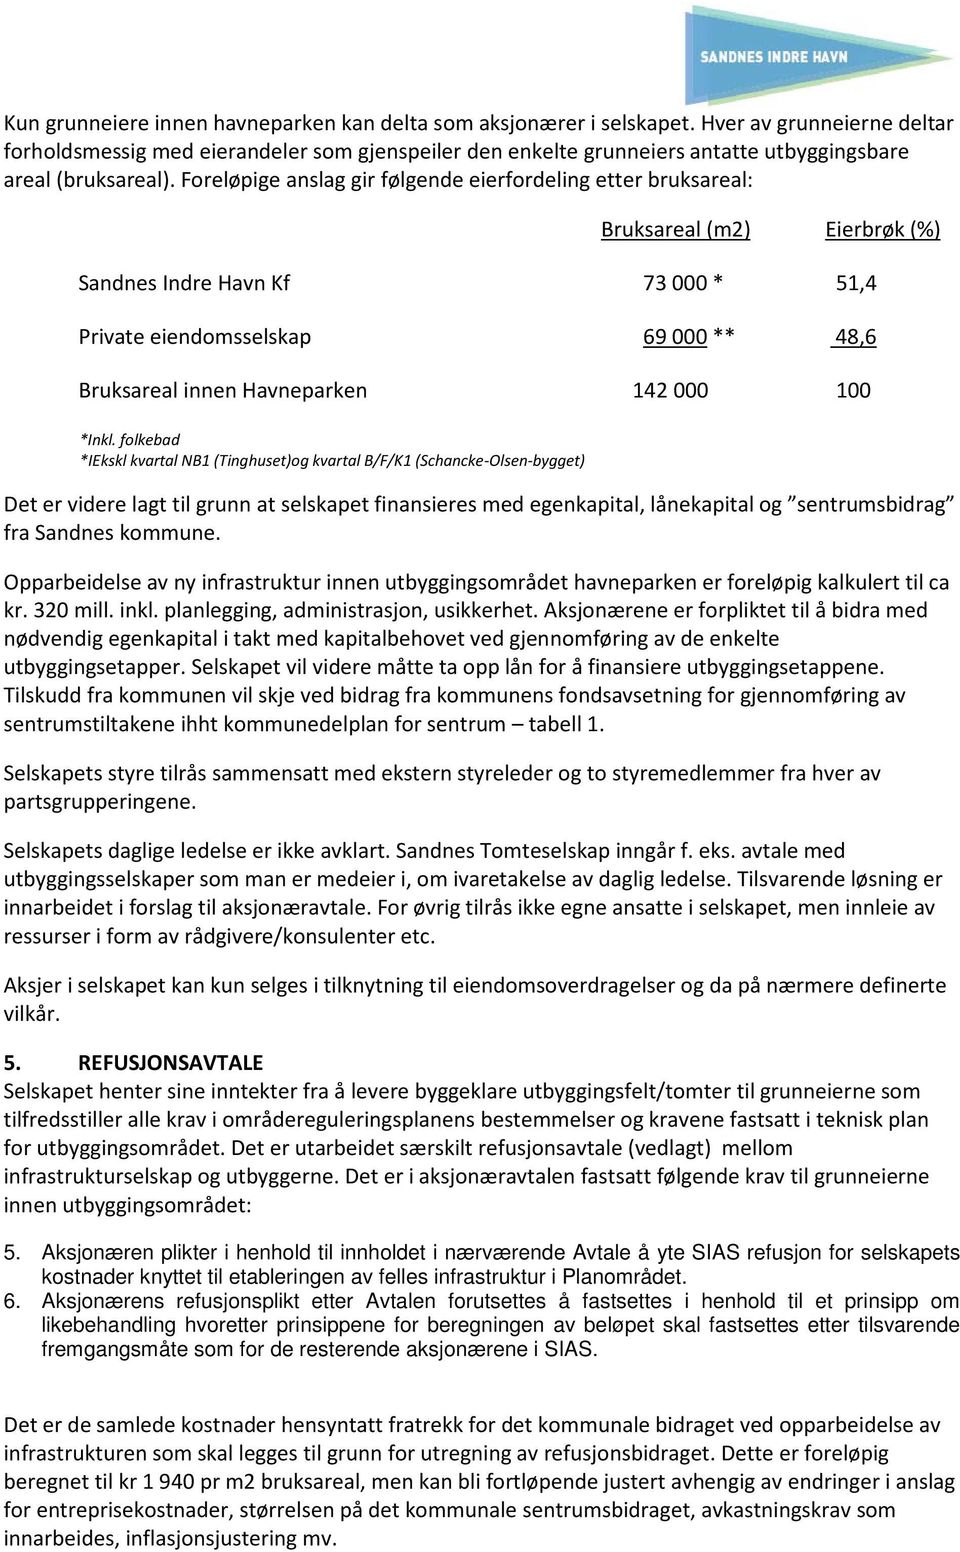 Foreløpige anslag gir følgende eierfordeling etter bruksareal: Bruksareal (m2) Eierbrøk (%) Sandnes Indre Havn Kf 73 000 * 51,4 Private eiendomsselskap 69 000 ** 48,6 Bruksareal innen Havneparken 142